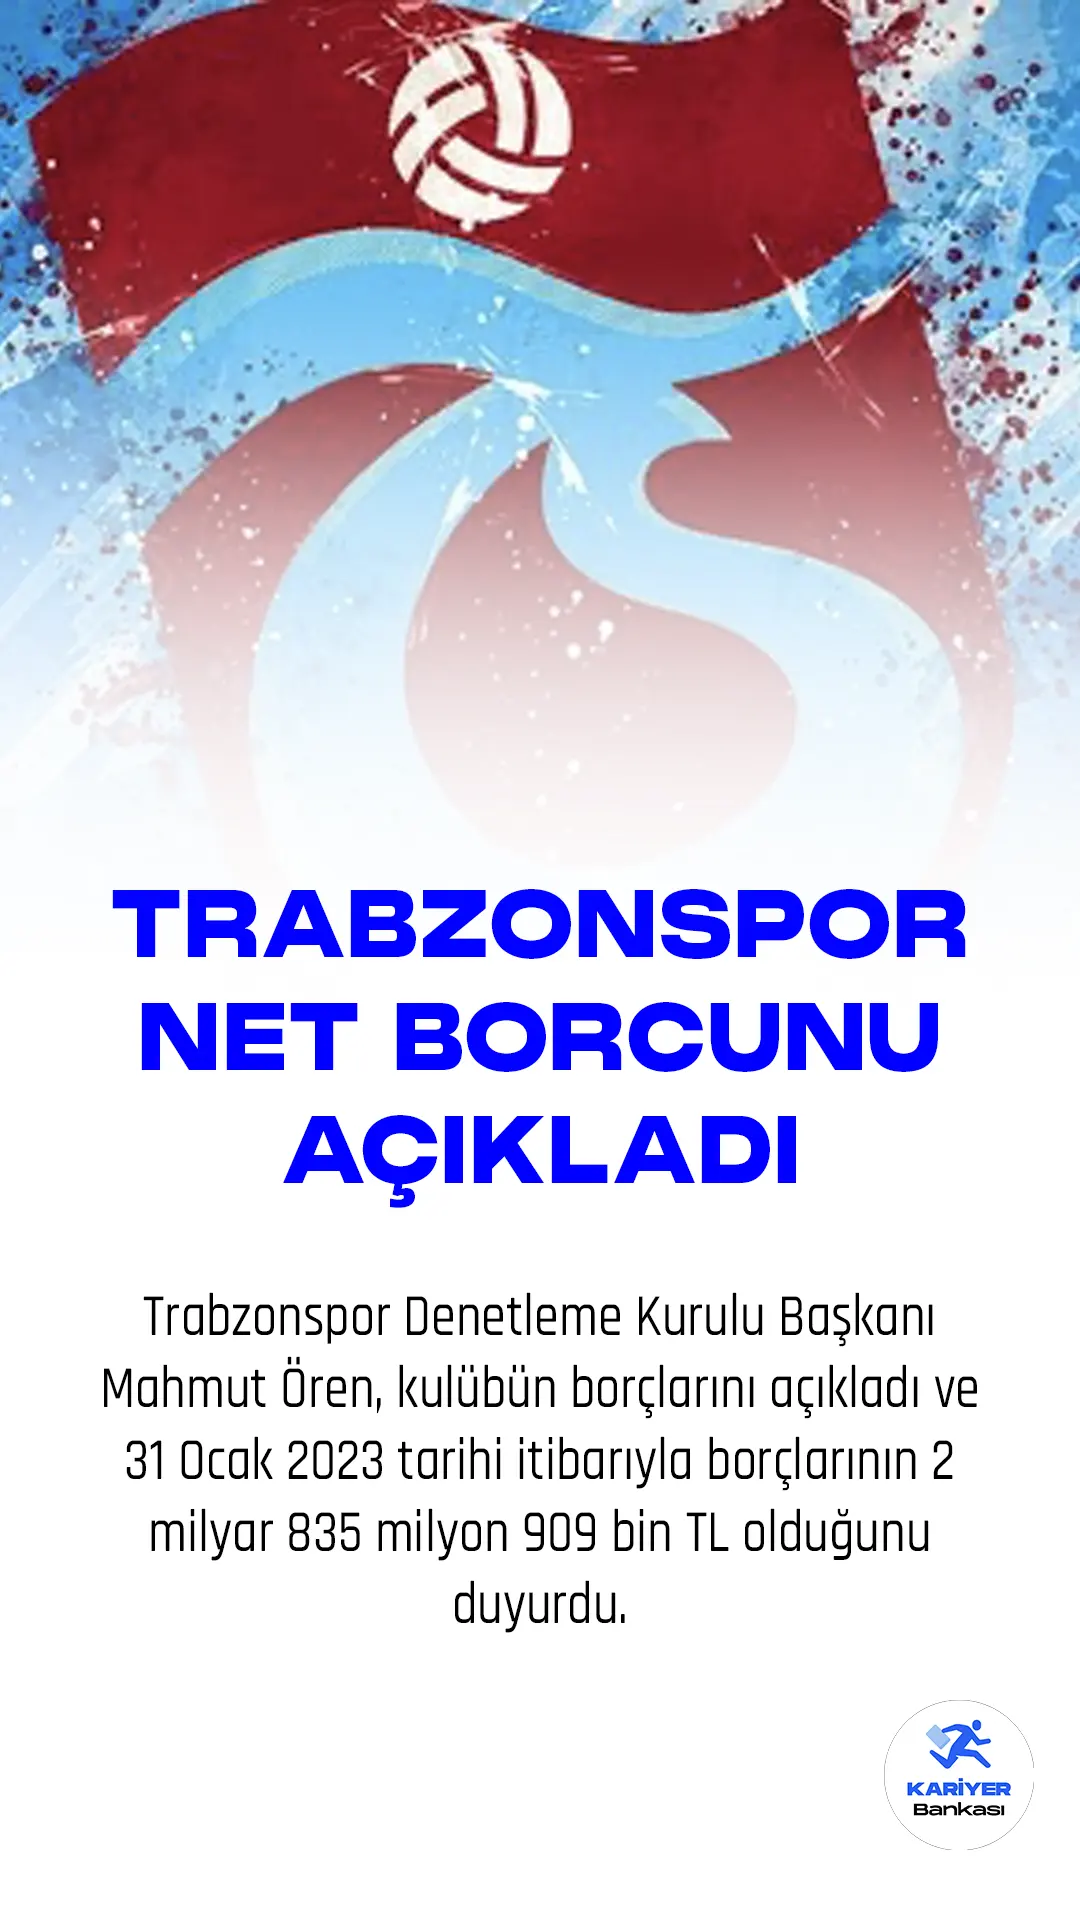 Trabzonspor Denetleme Kurulu Başkanı Mahmut Ören, kulübün borçlarını açıkladı ve 31 Ocak 2023 tarihi itibarıyla borçlarının 2 milyar 835 milyon 909 bin TL olduğunu duyurdu.